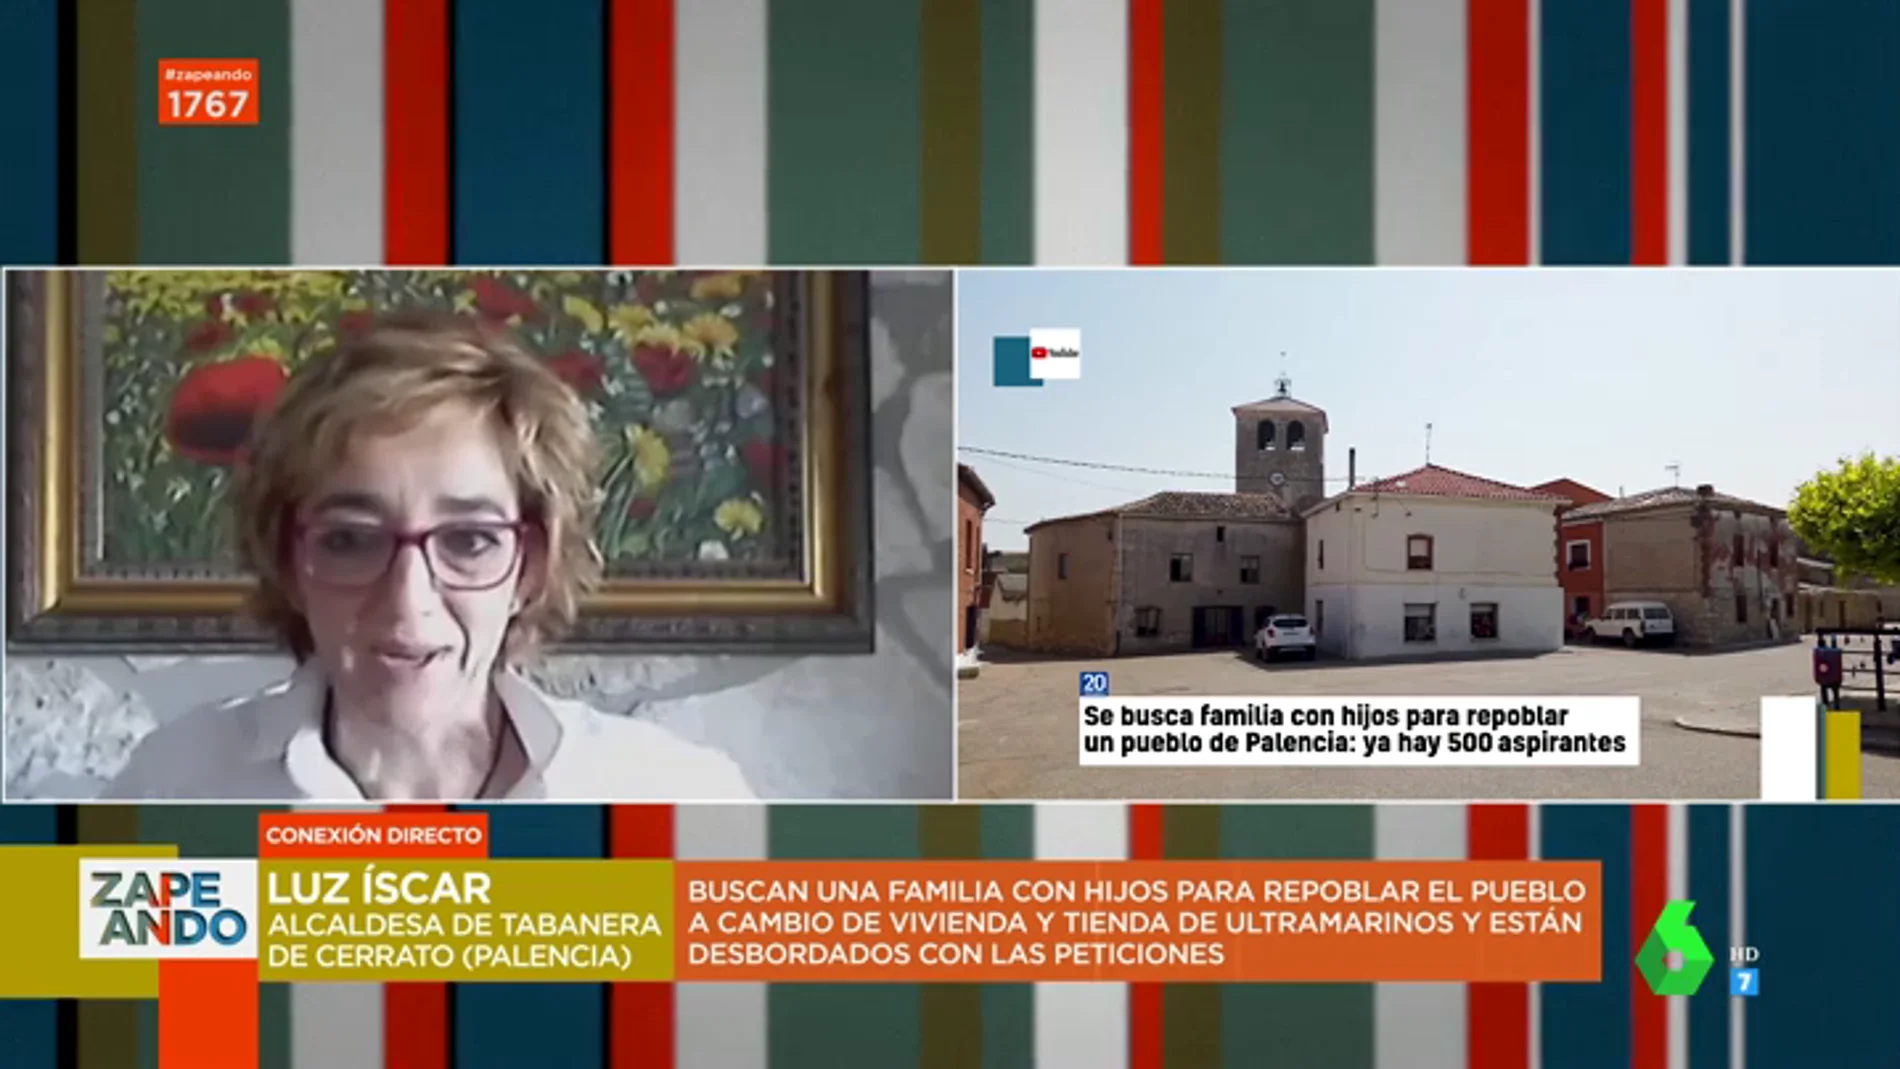 Habla la alcaldesa de Tabanera de Cerrato, el pueblo que busca una familia con hijos: "Es una forma de darle vida"